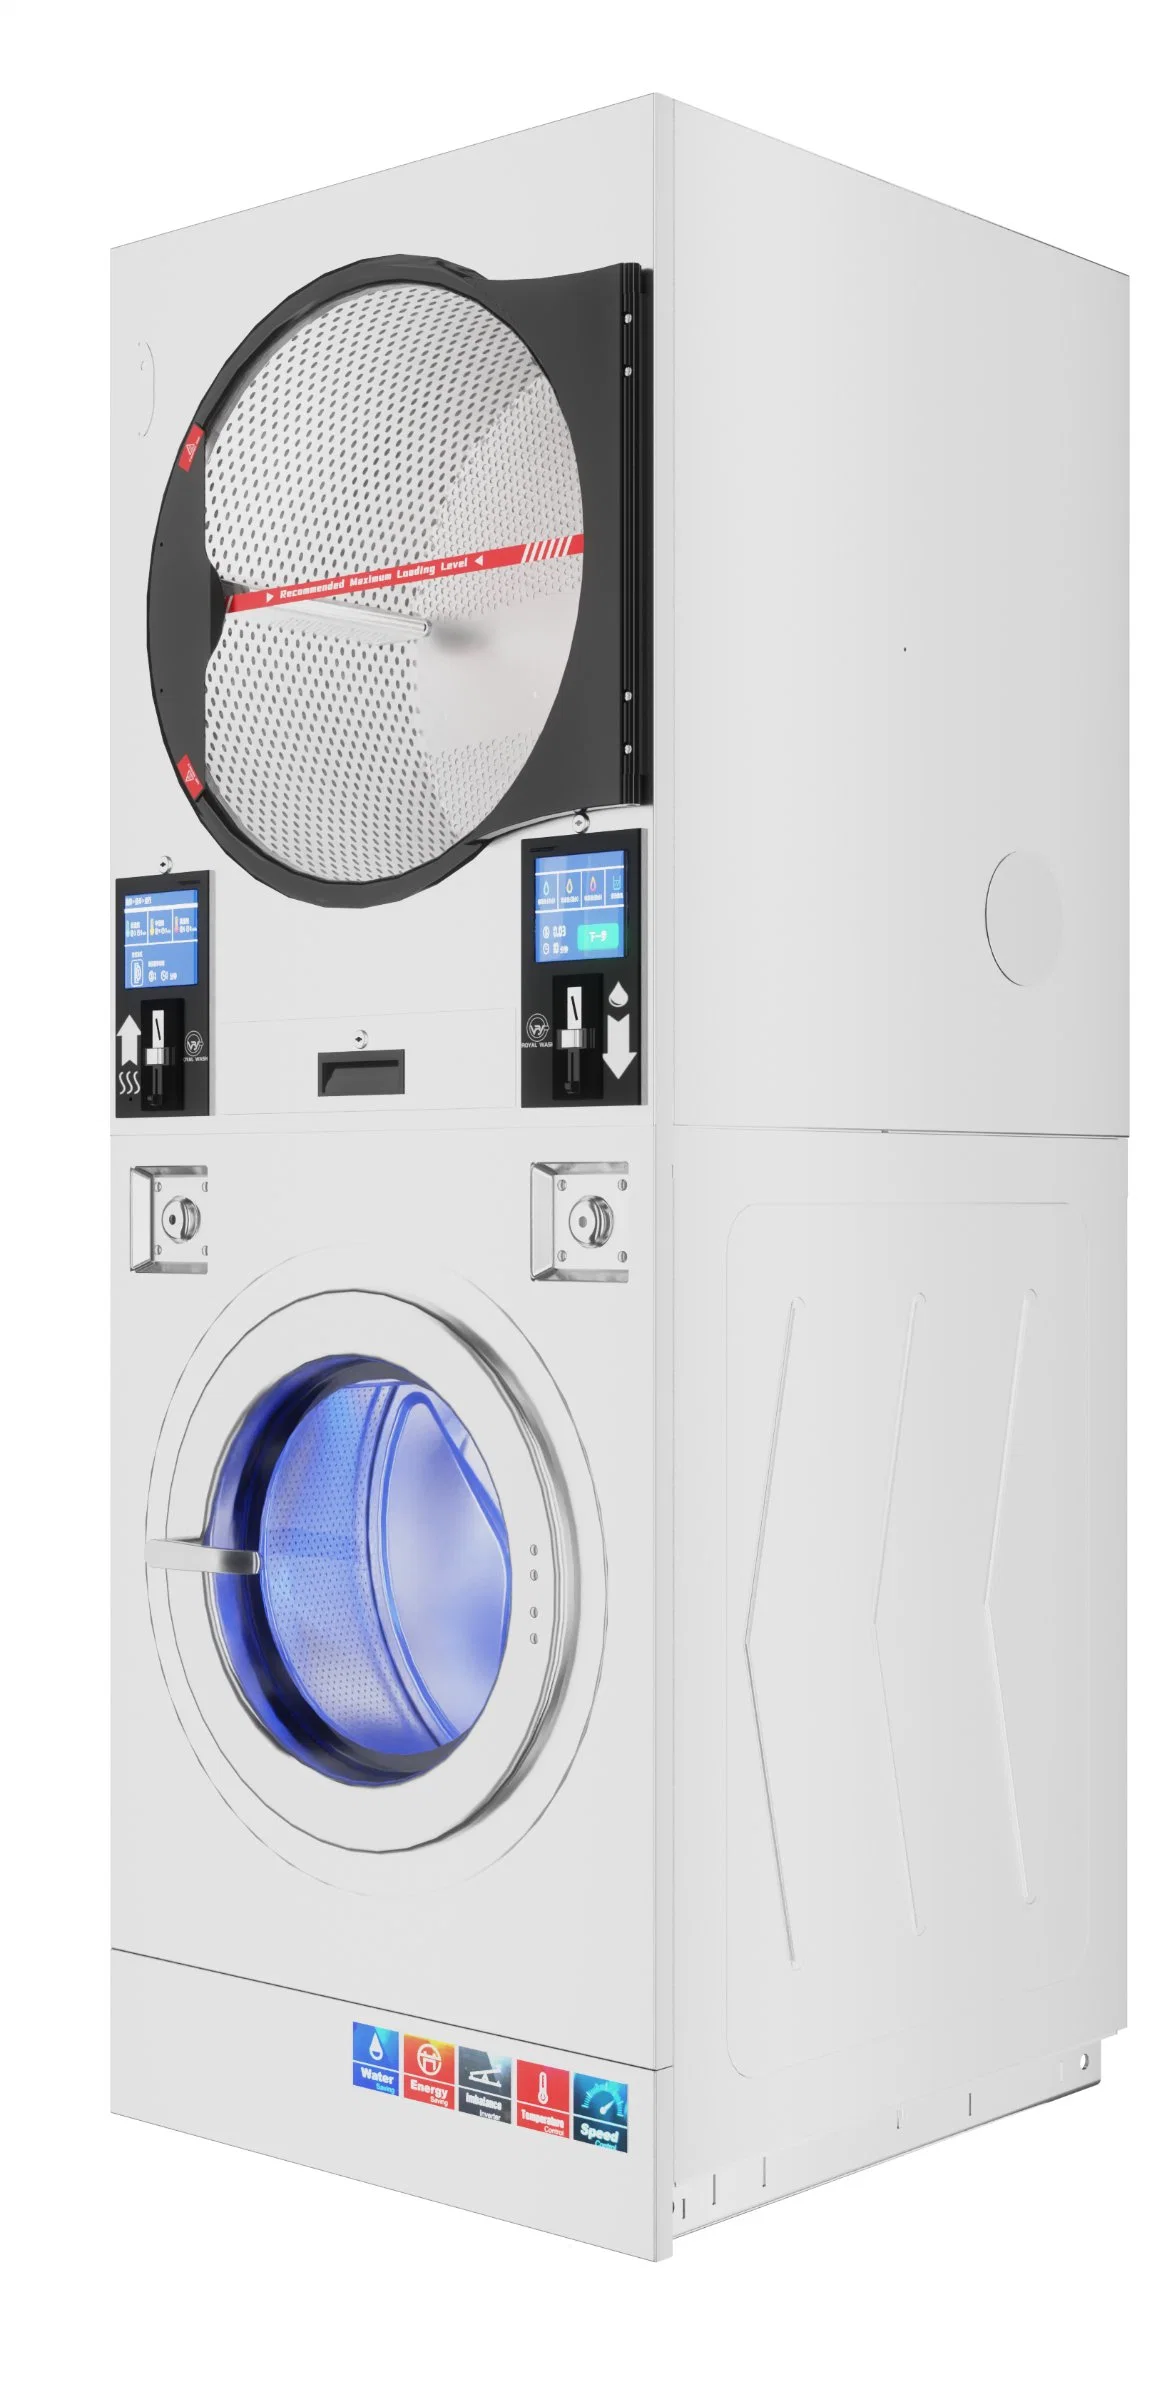 Machine à laver et sécheuse superposées avec chauffage électrique au gaz pour une laverie automatique.